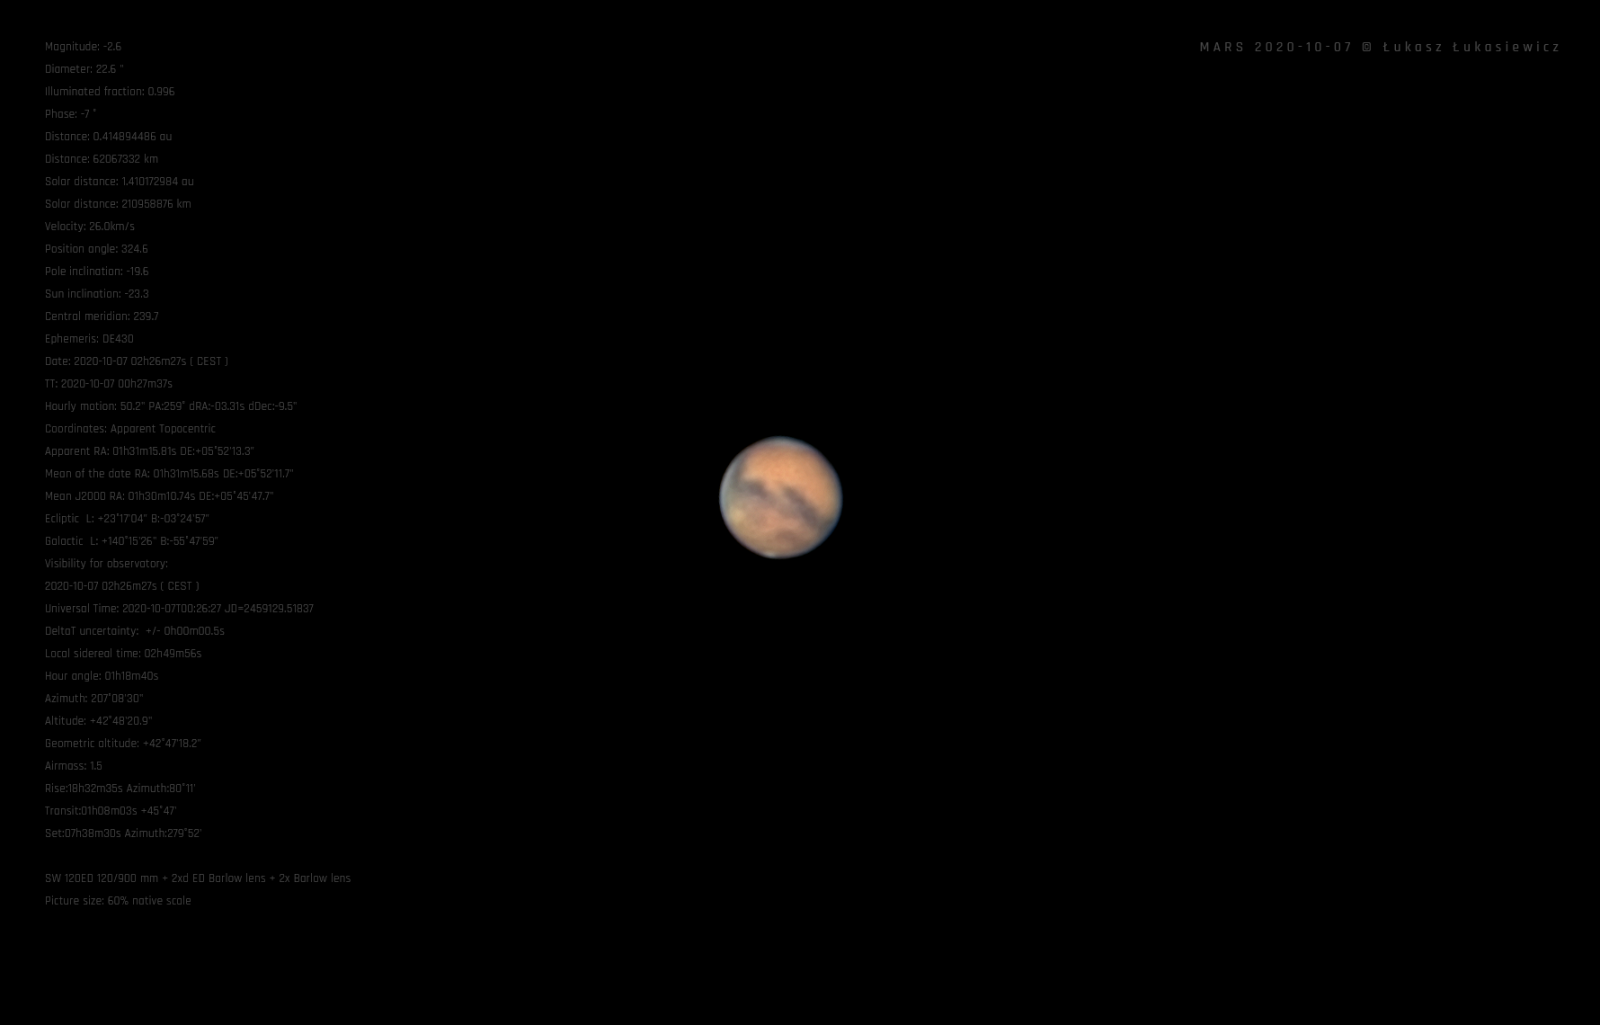 MARS-2020-10-07D.png